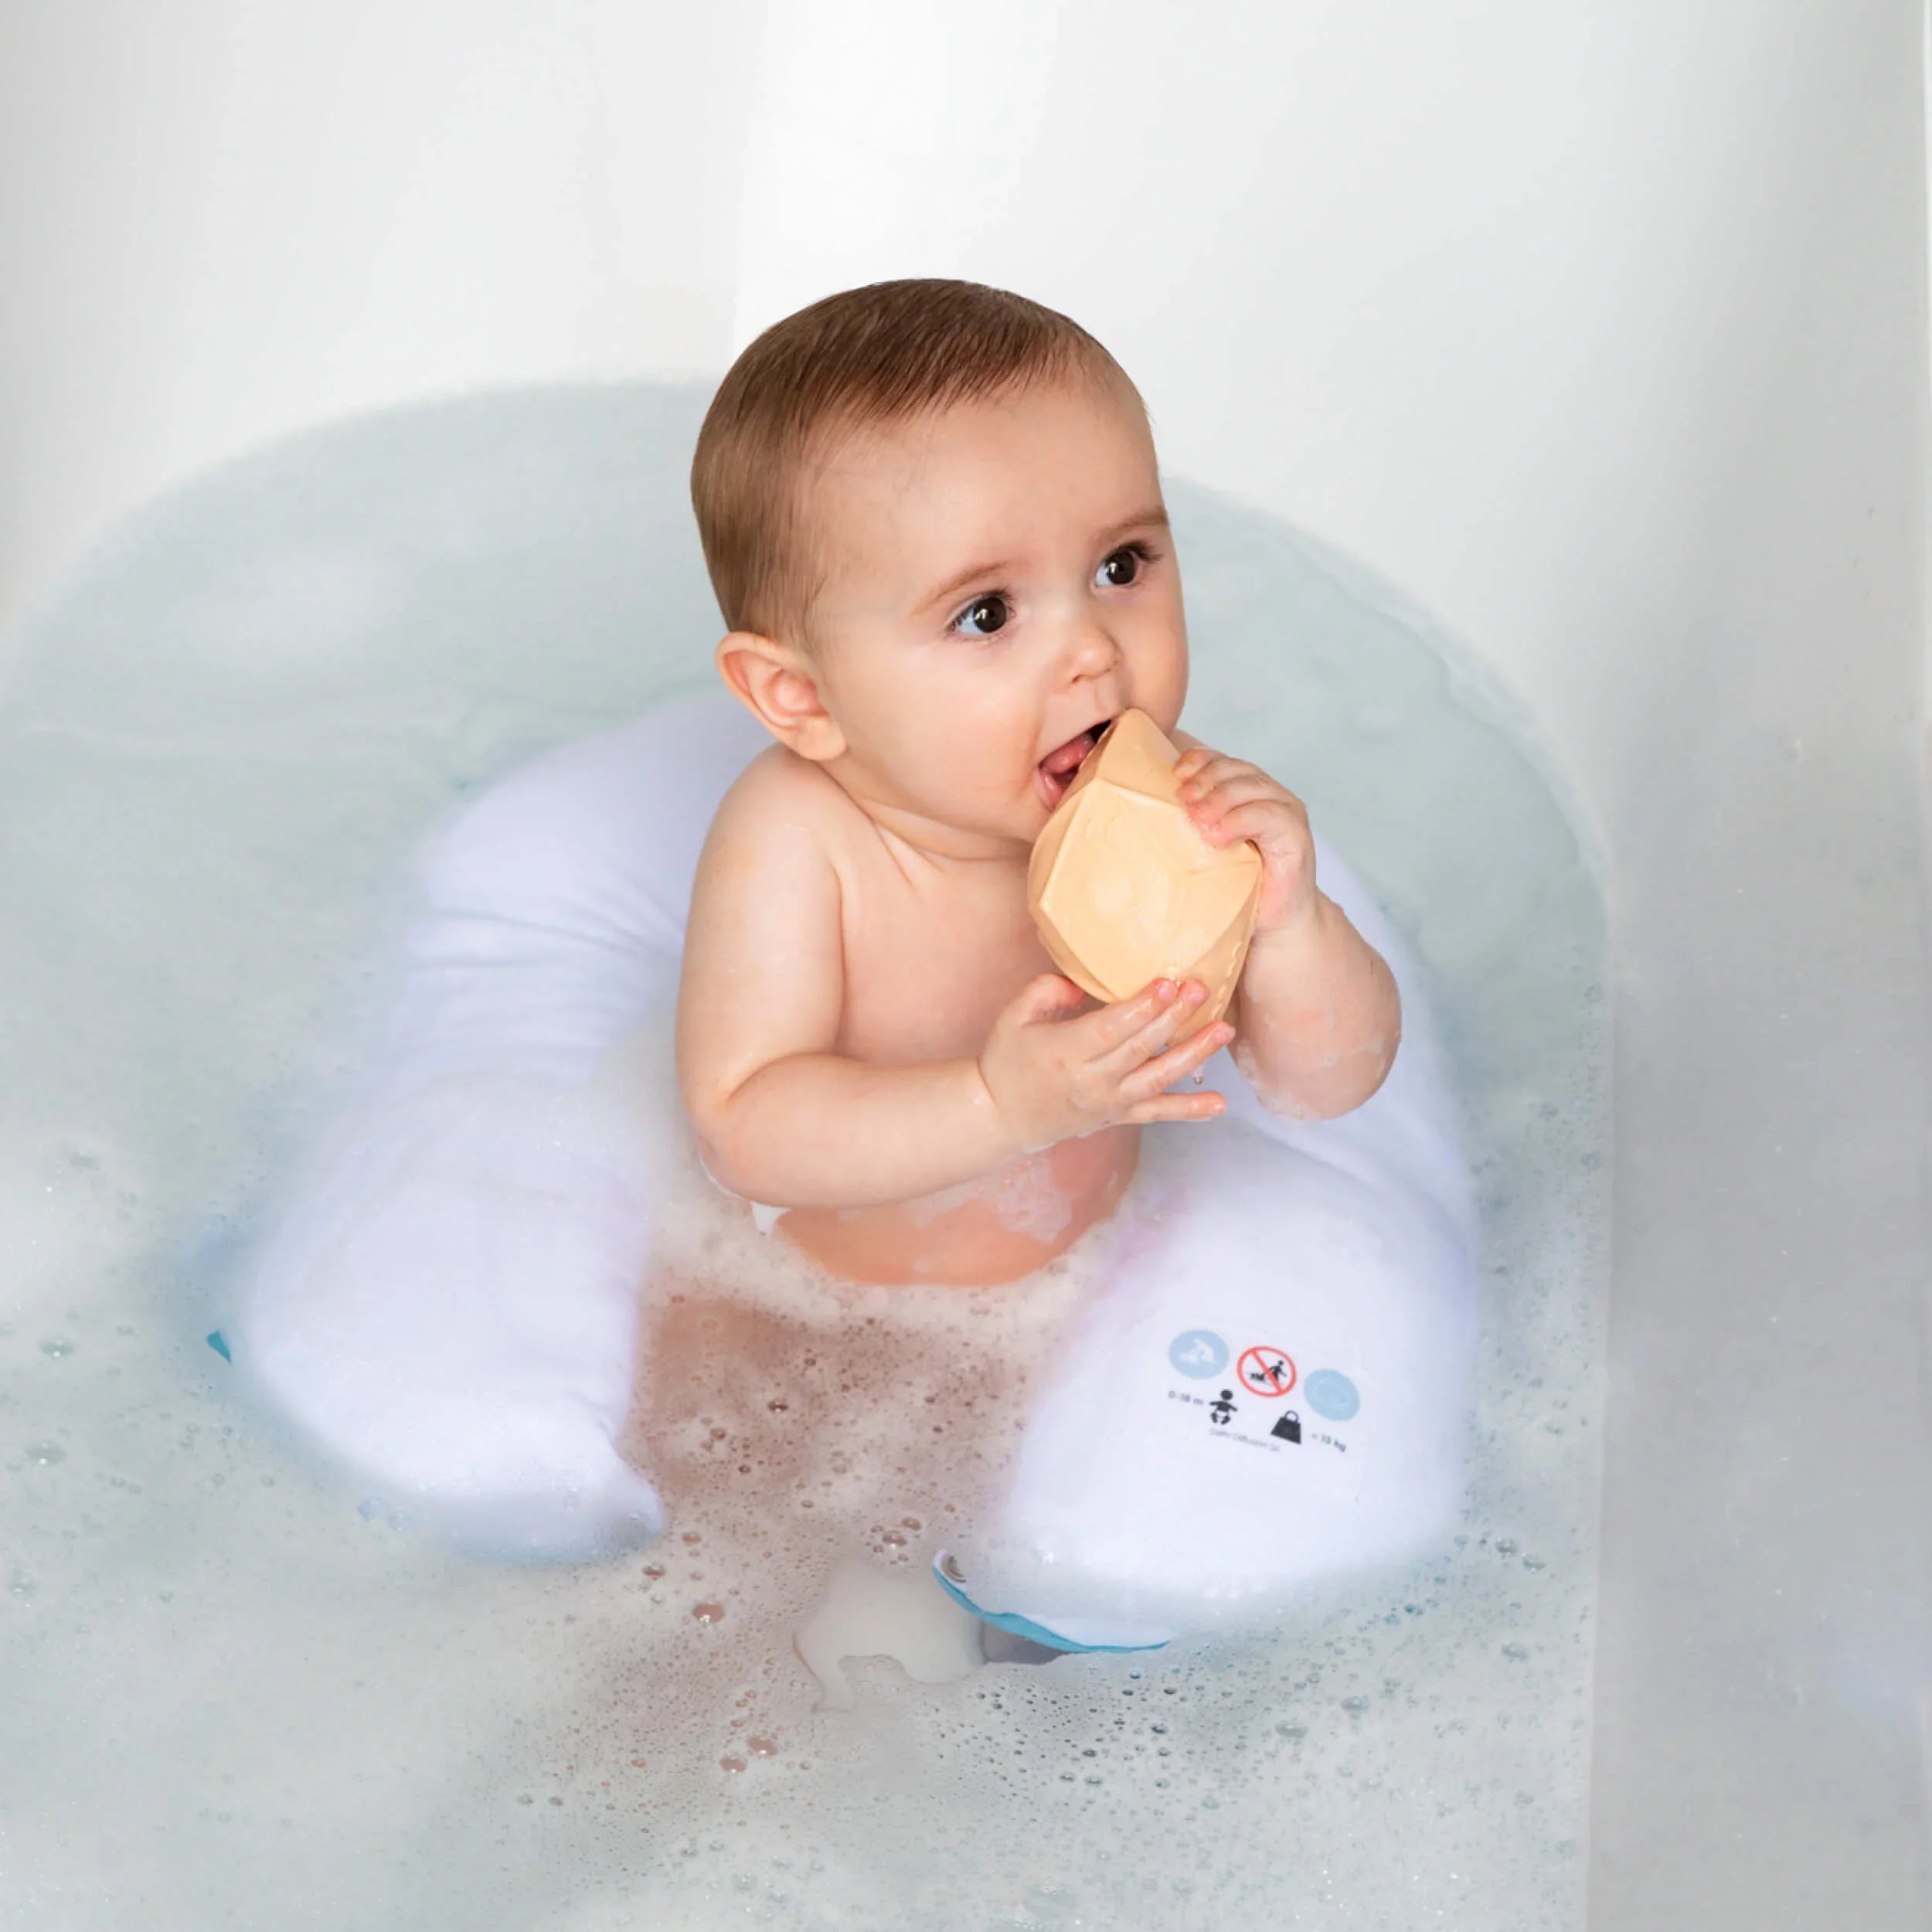 Un bébé assis dans une baignoire pour le bain | Babykare.fr